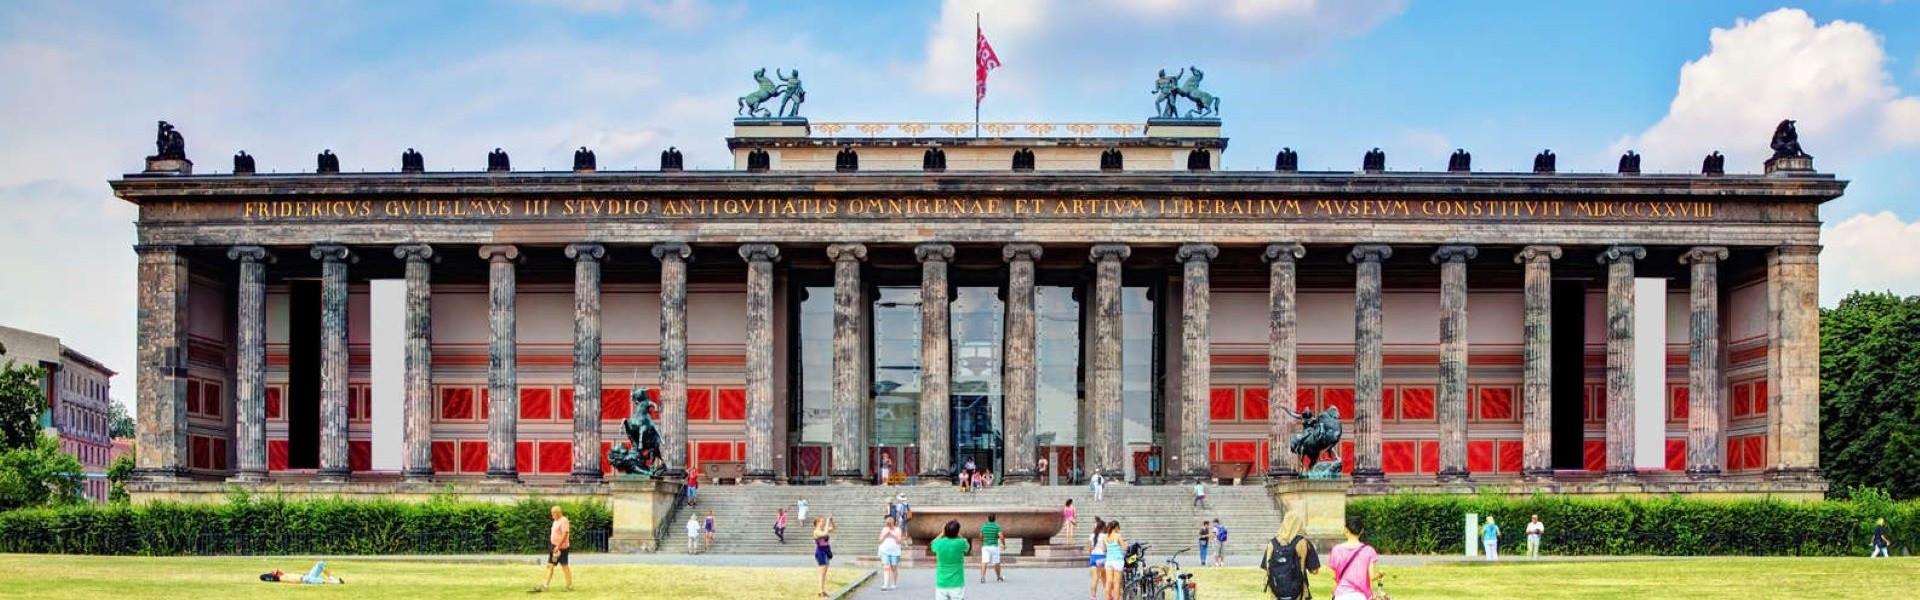 موزه آلتس  برلین Berlin Altes Museum